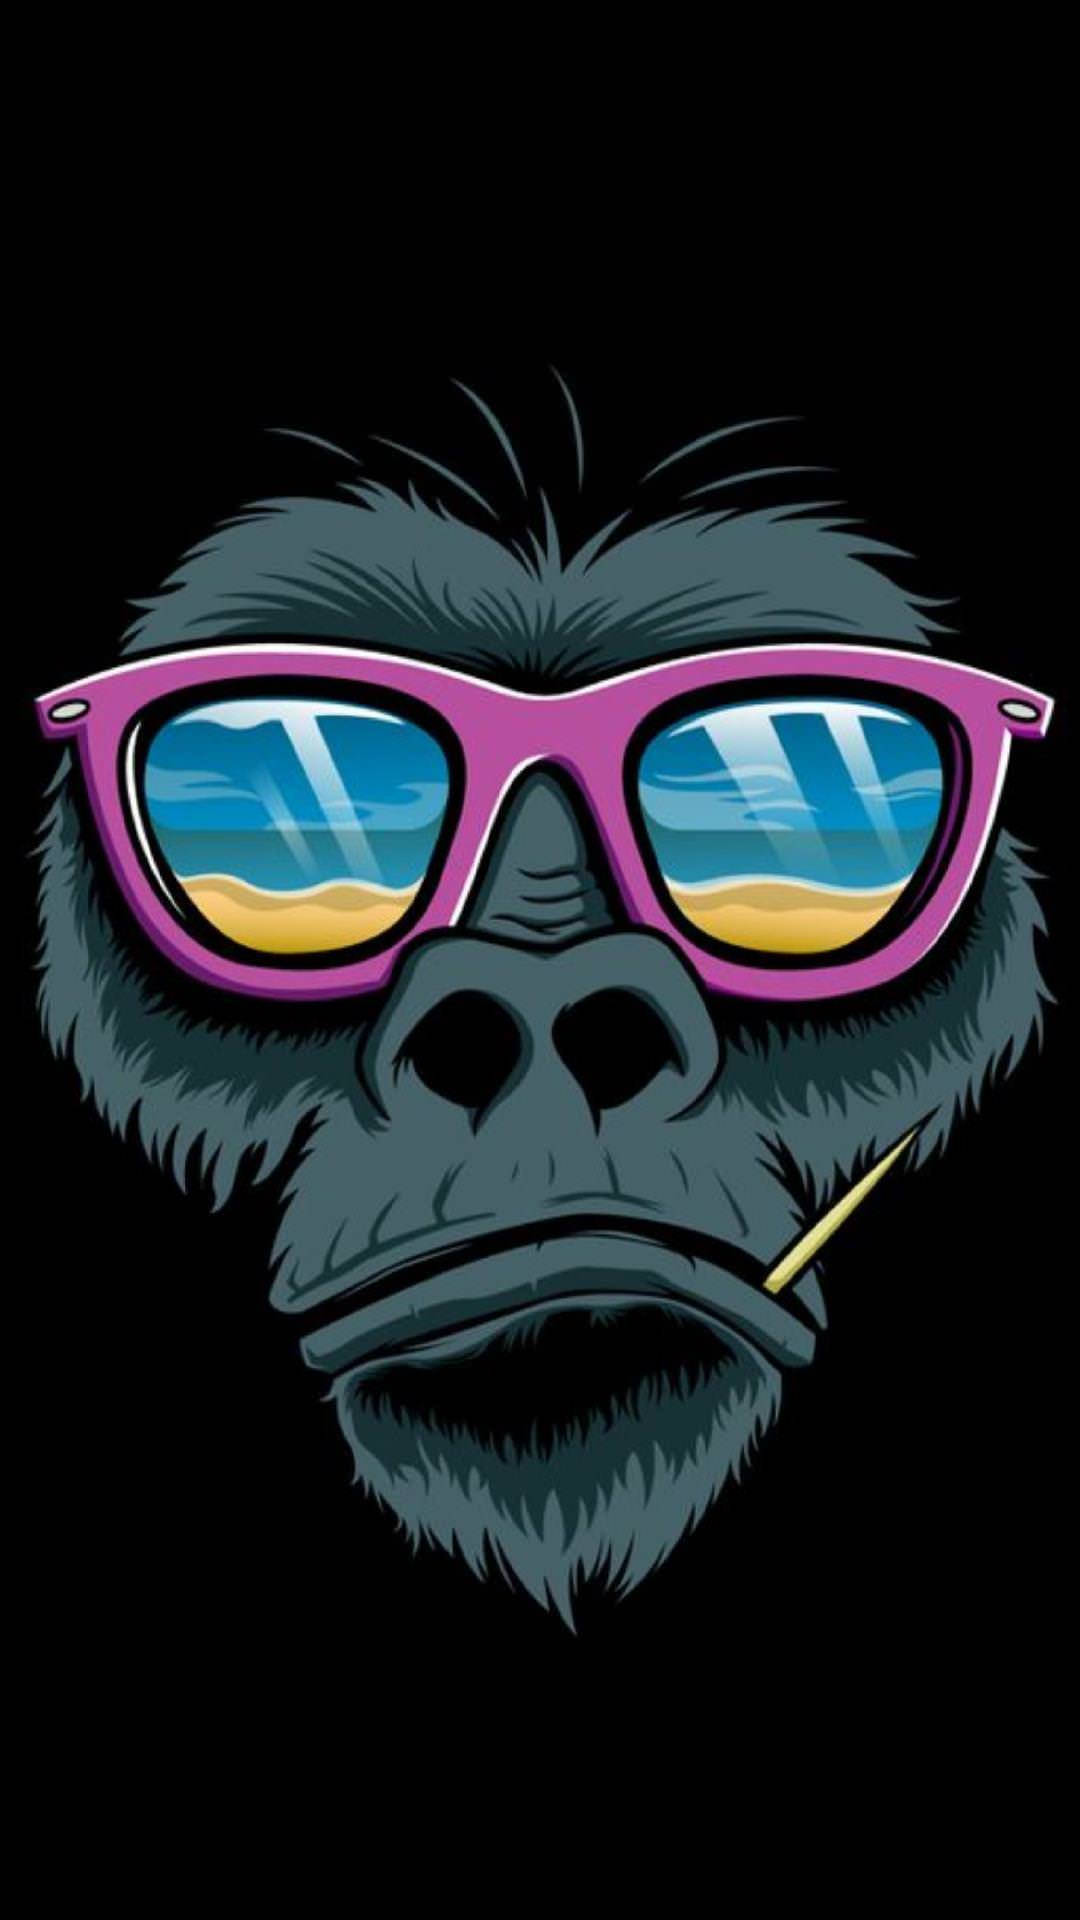 A Gorilla Wearing Sunglasses And A Cigarette